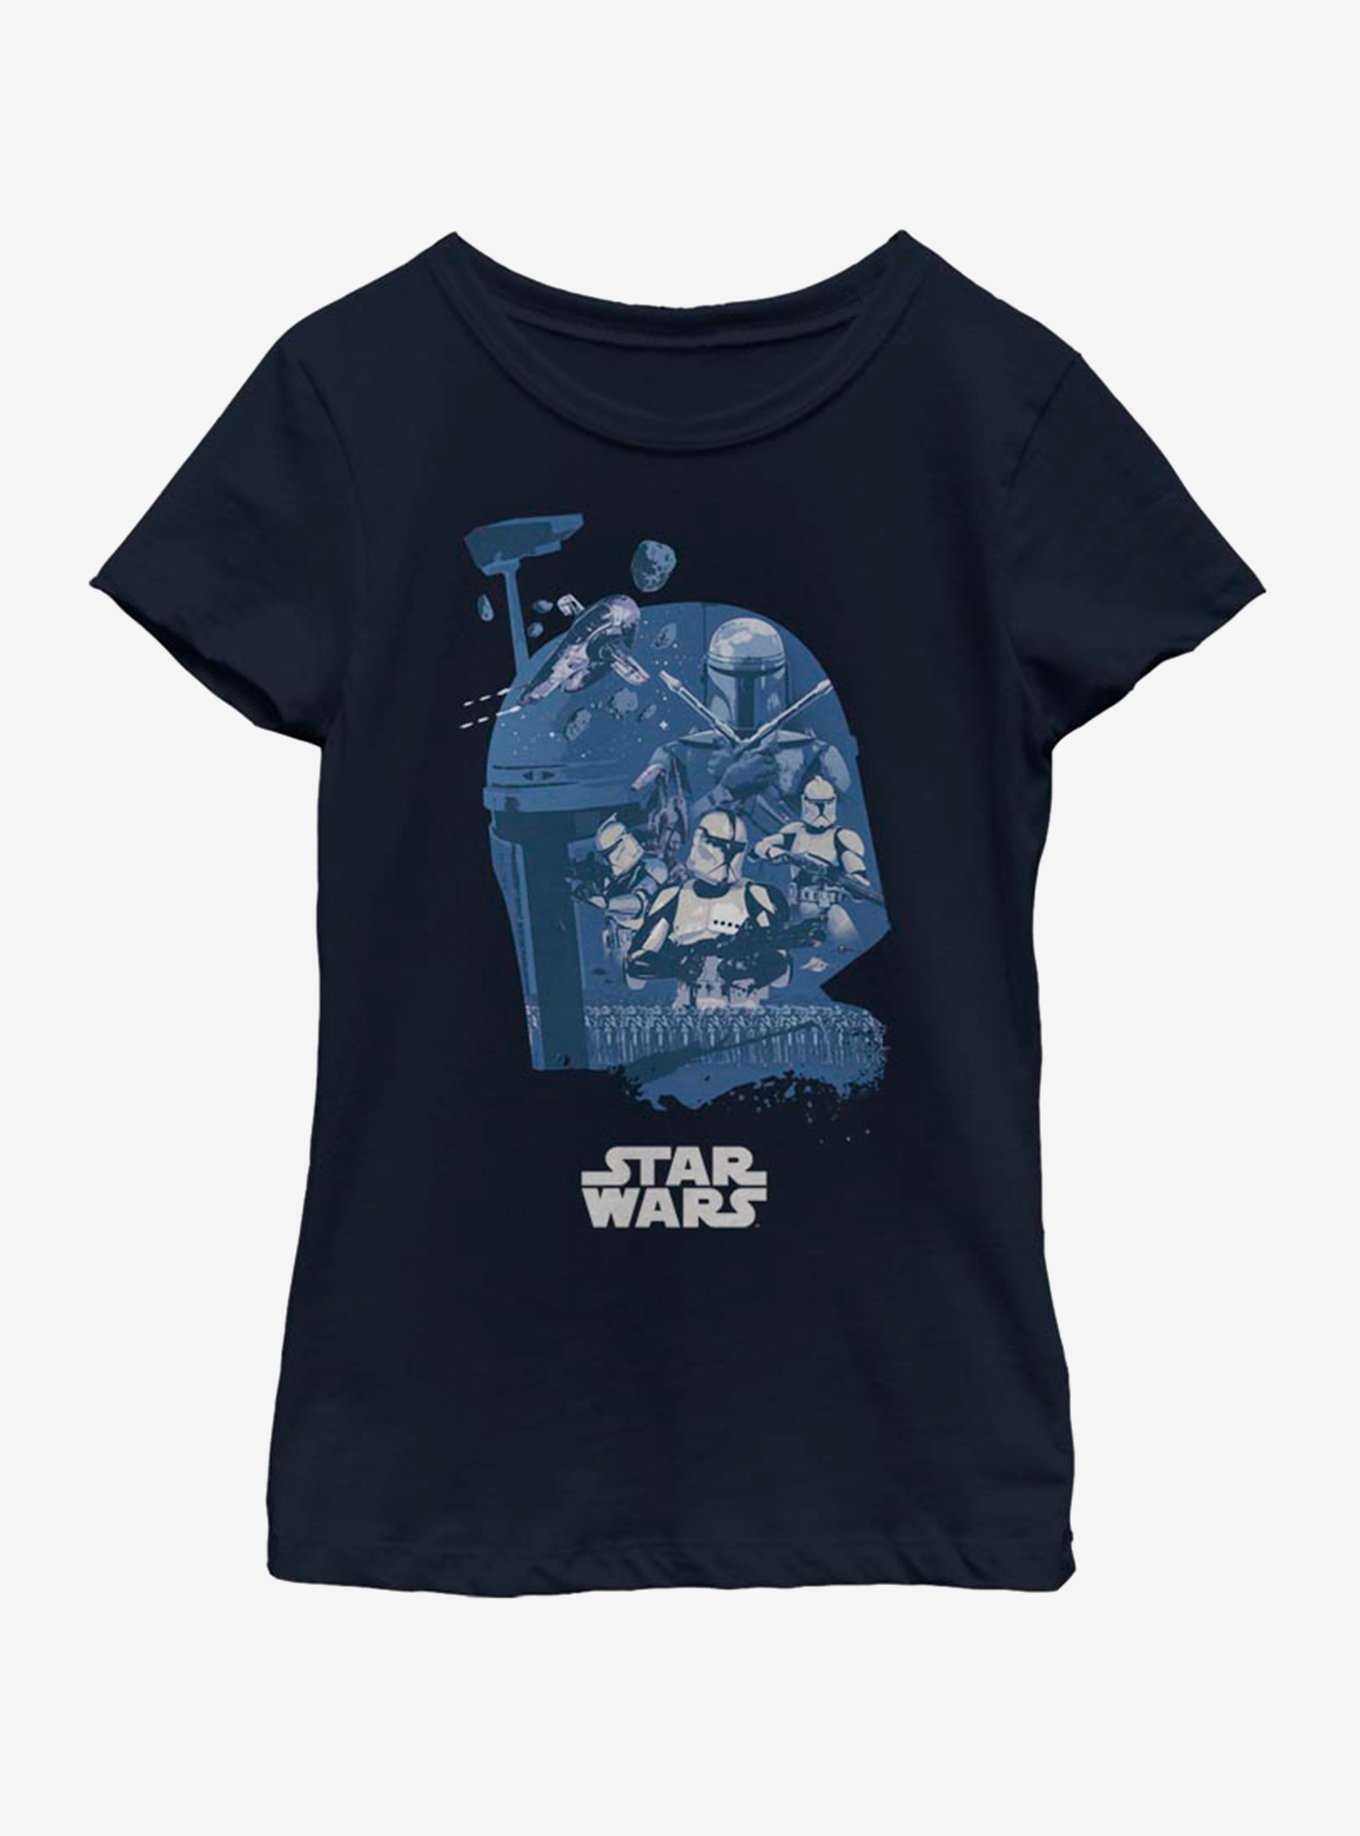 Star Wars Boba Fett Head Fill Youth Girls T-Shirt, , hi-res